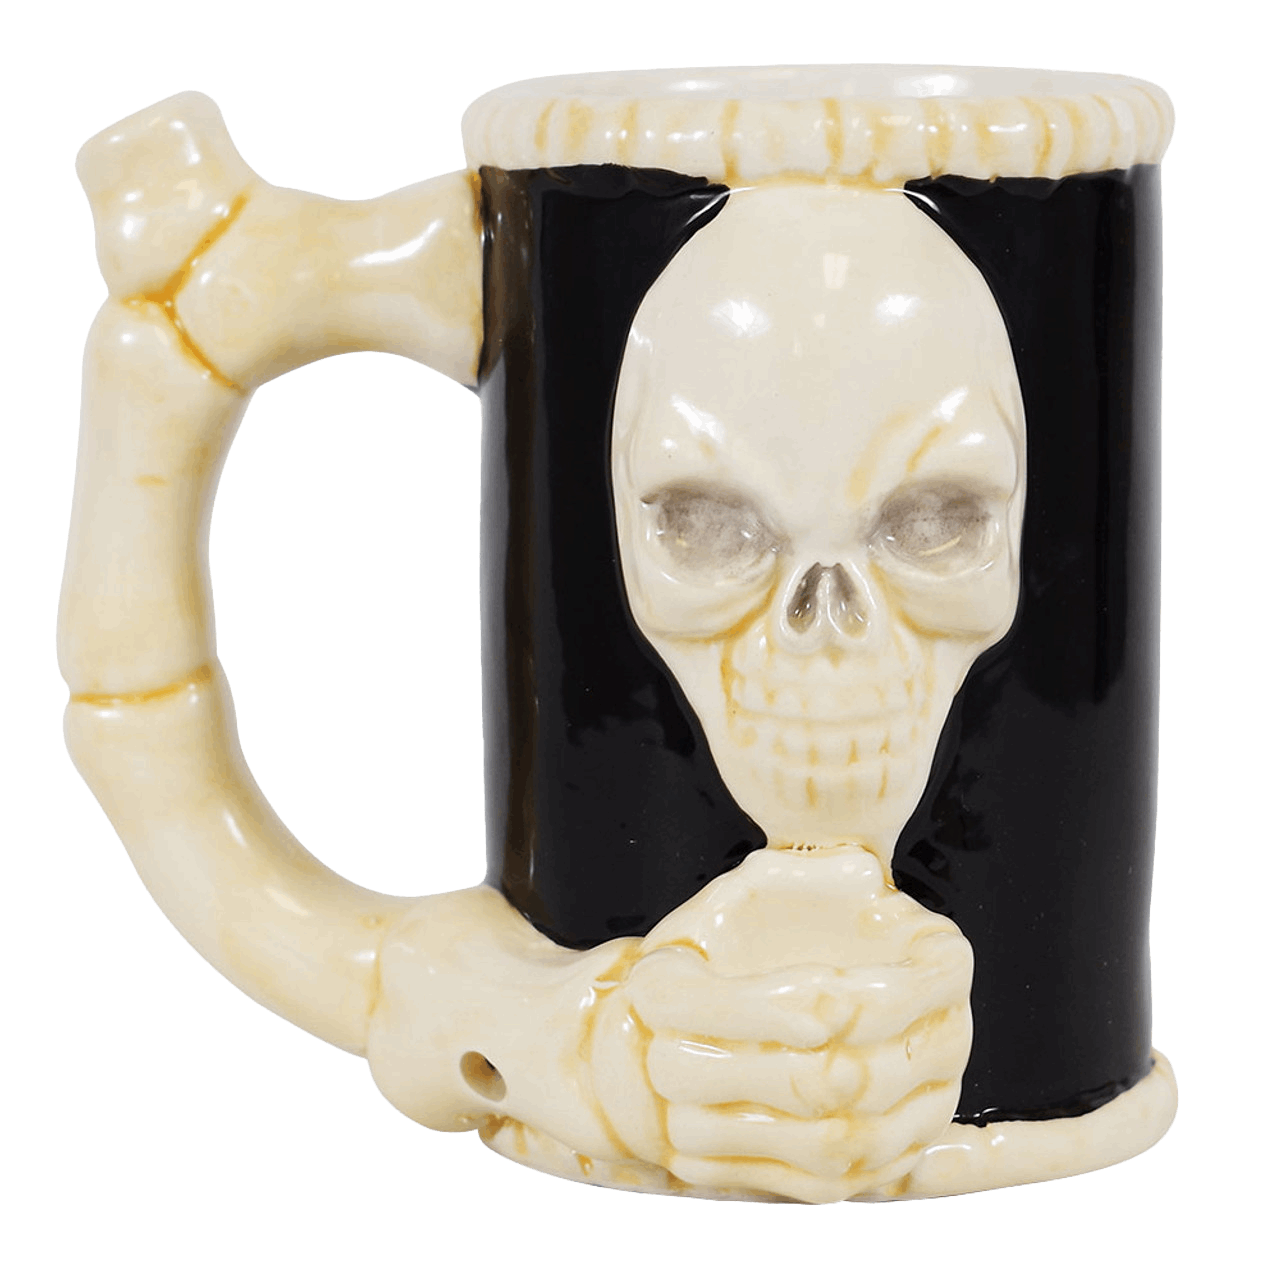 SMOKEA Ceramic Santa Coffee Mug Pipe